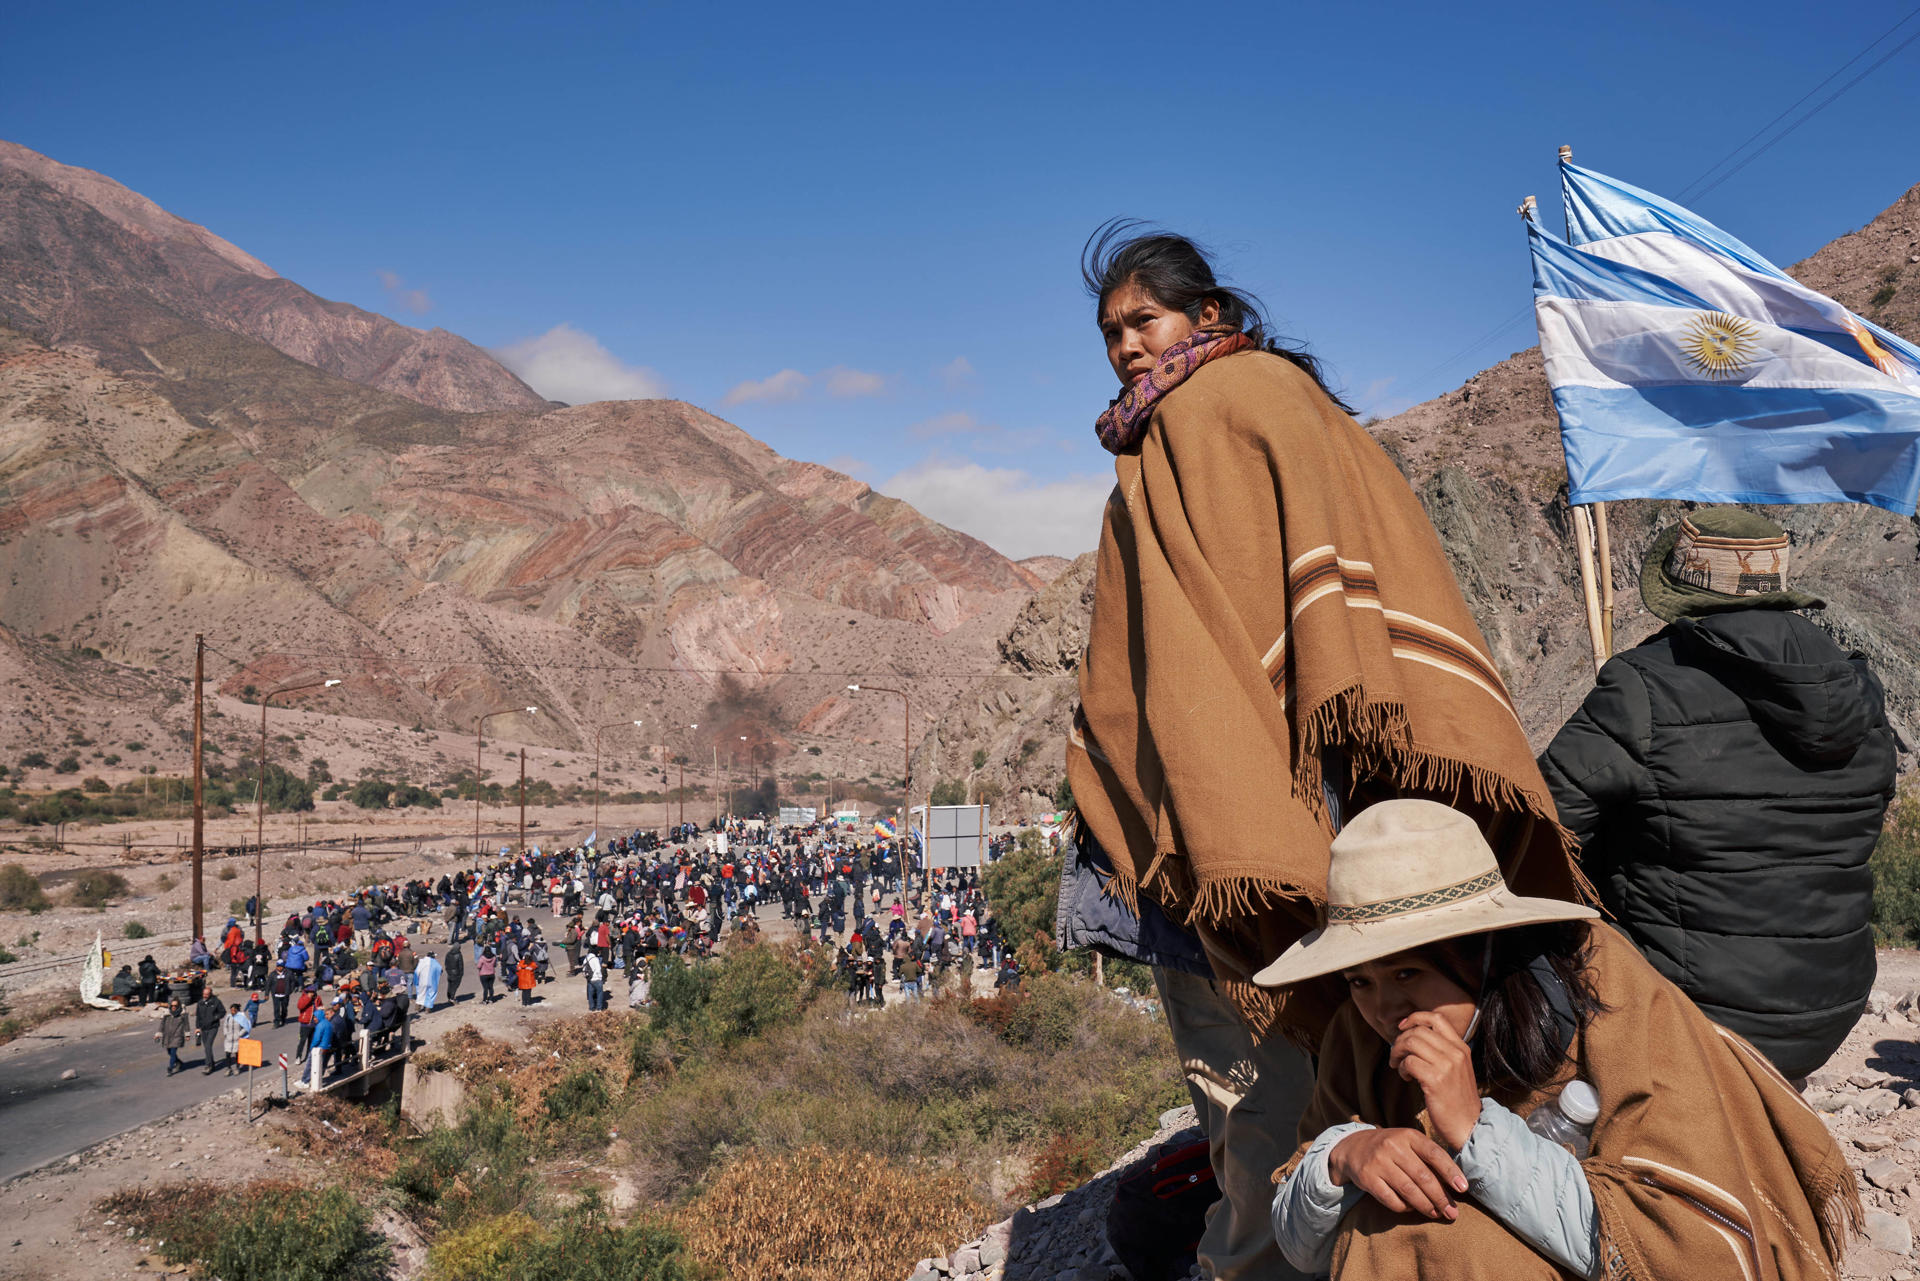 Integrantes de comunidades originarias cortan una vía durante una manifestación junto al Cerro de los Siete Colores en Purmamarca, provincia de Jujuy, Argentina. Foto: fuente externa.